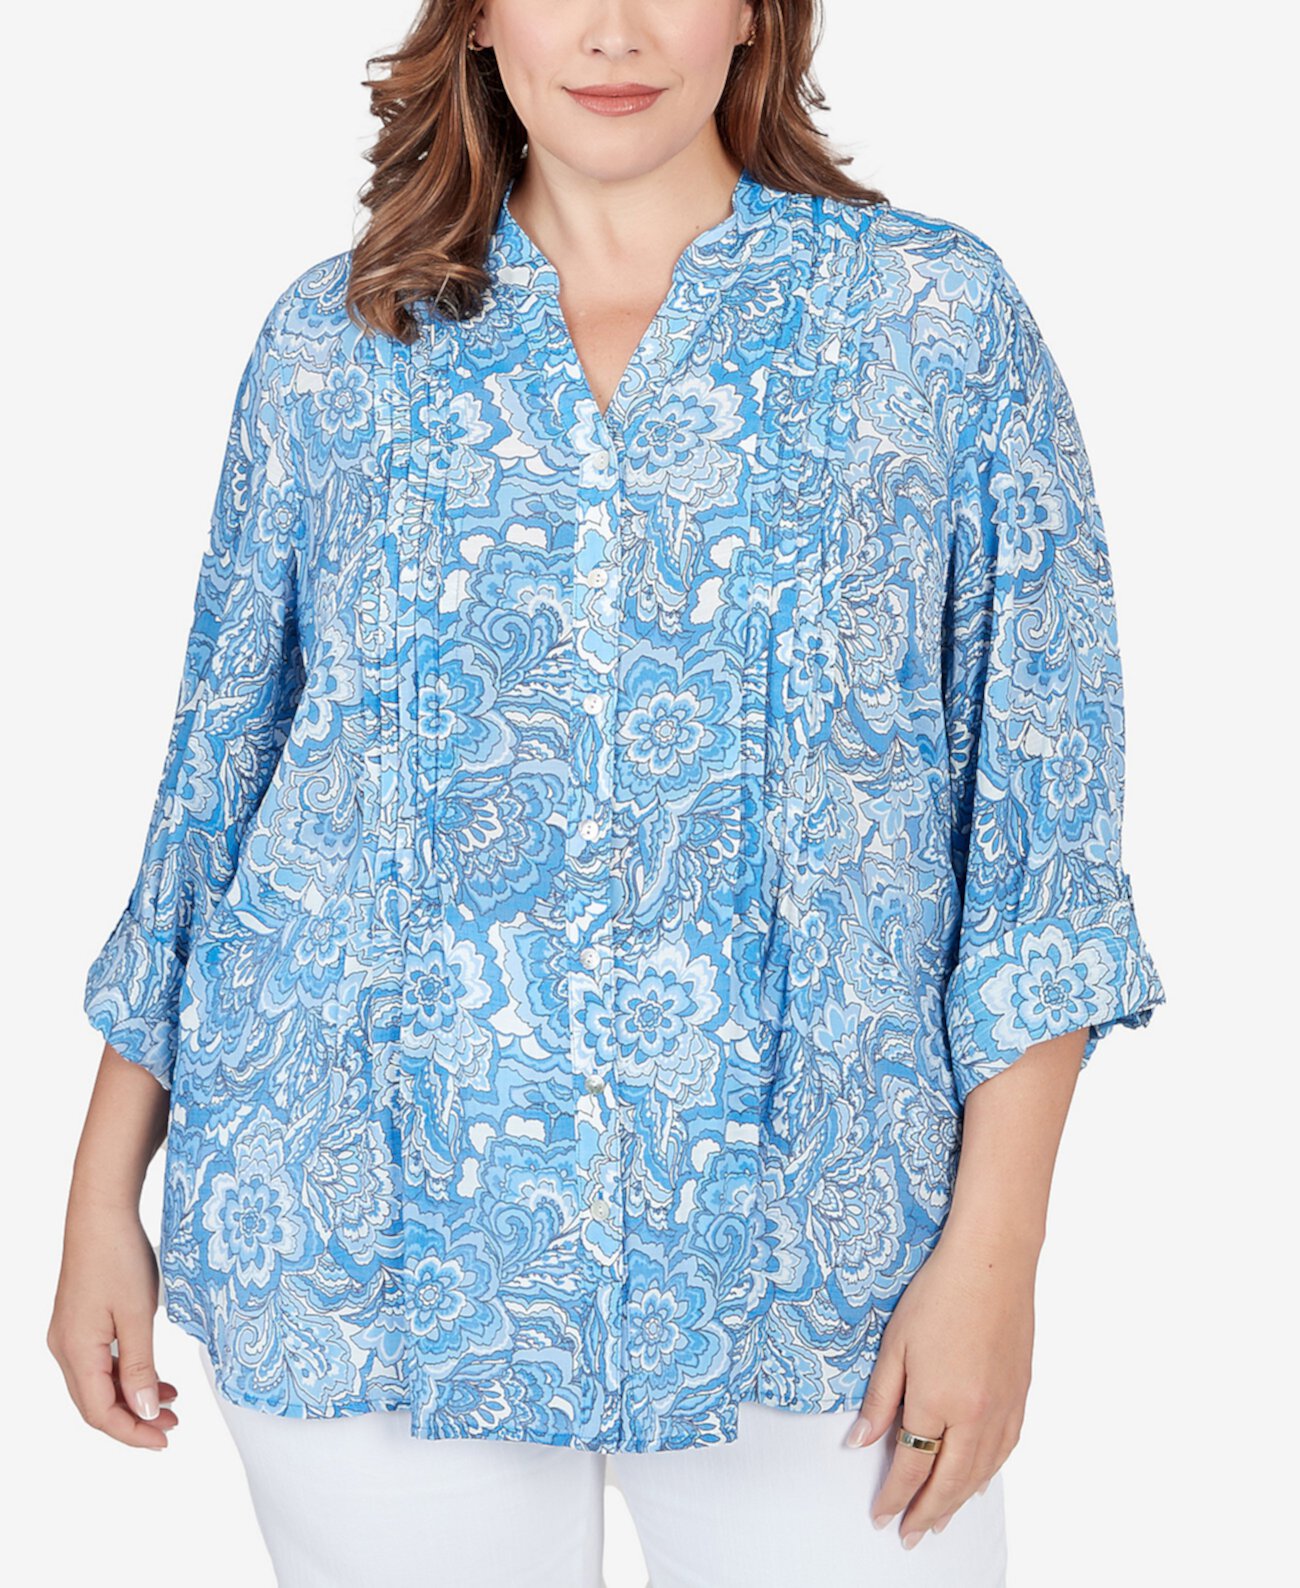 Рубашка из шелковистого газа с цветочным принтом на пуговицах больших размеров спереди Ruby Rd.